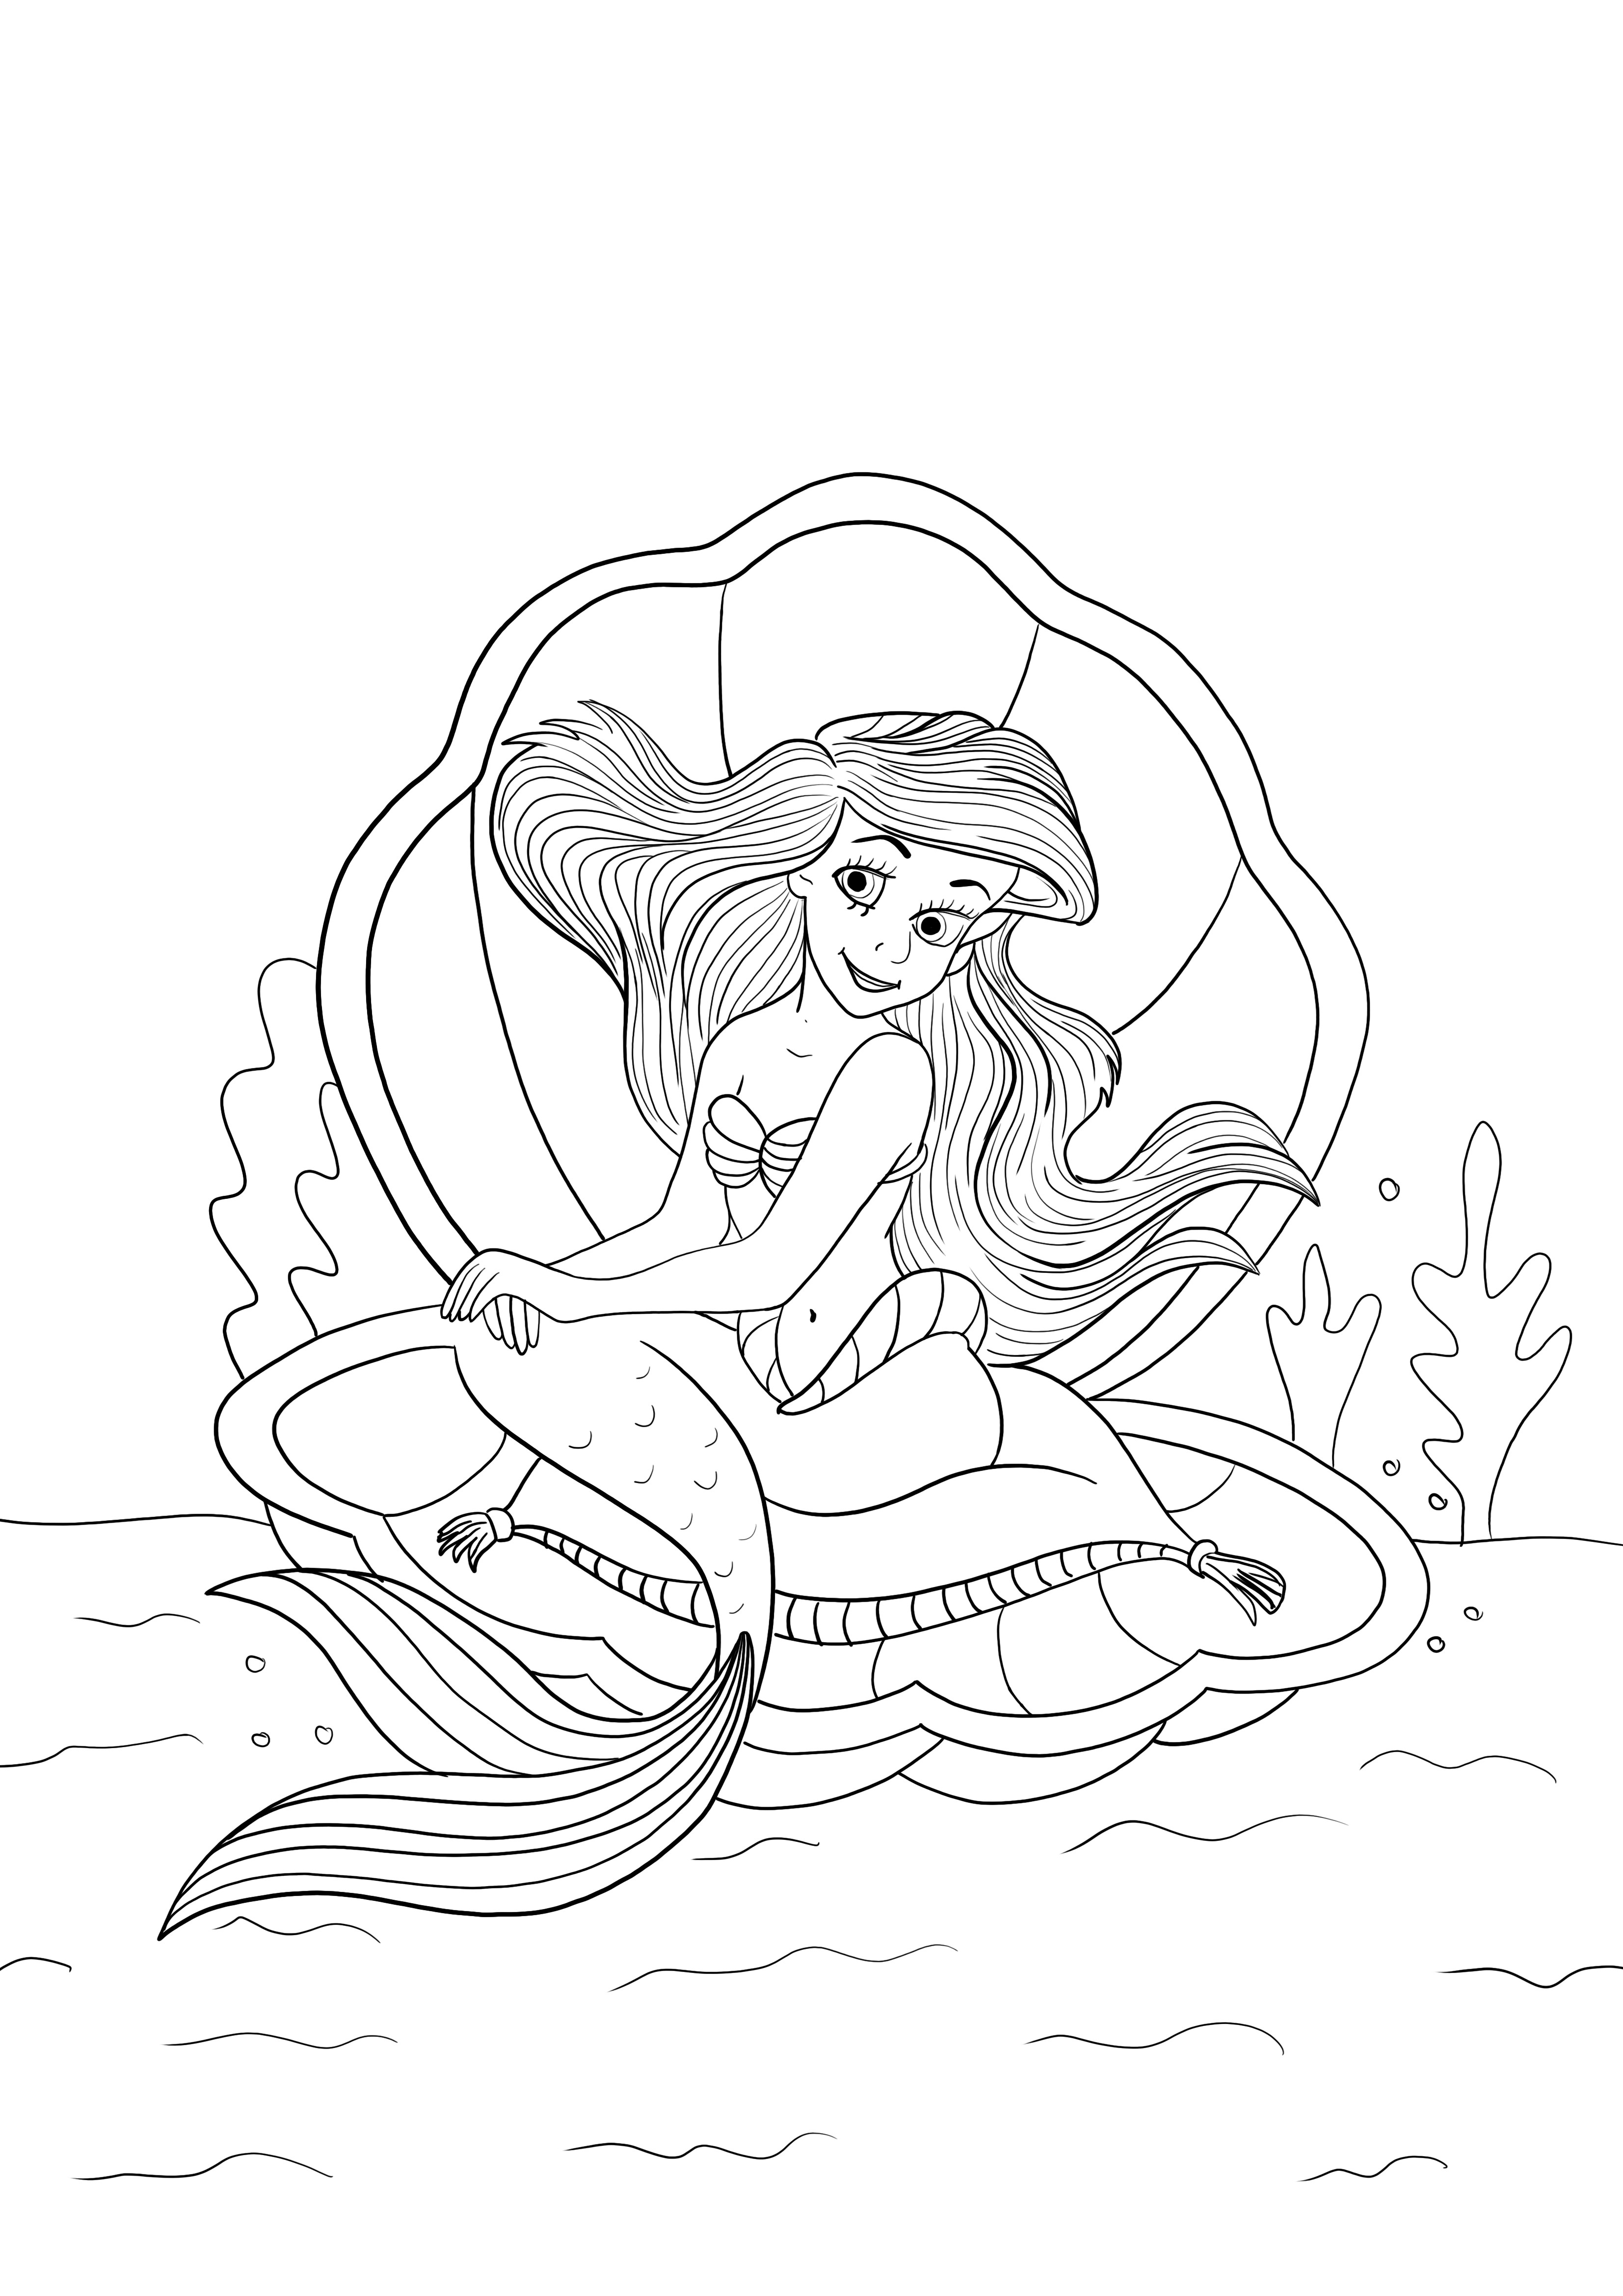 Ariel sedang duduk di cangkang